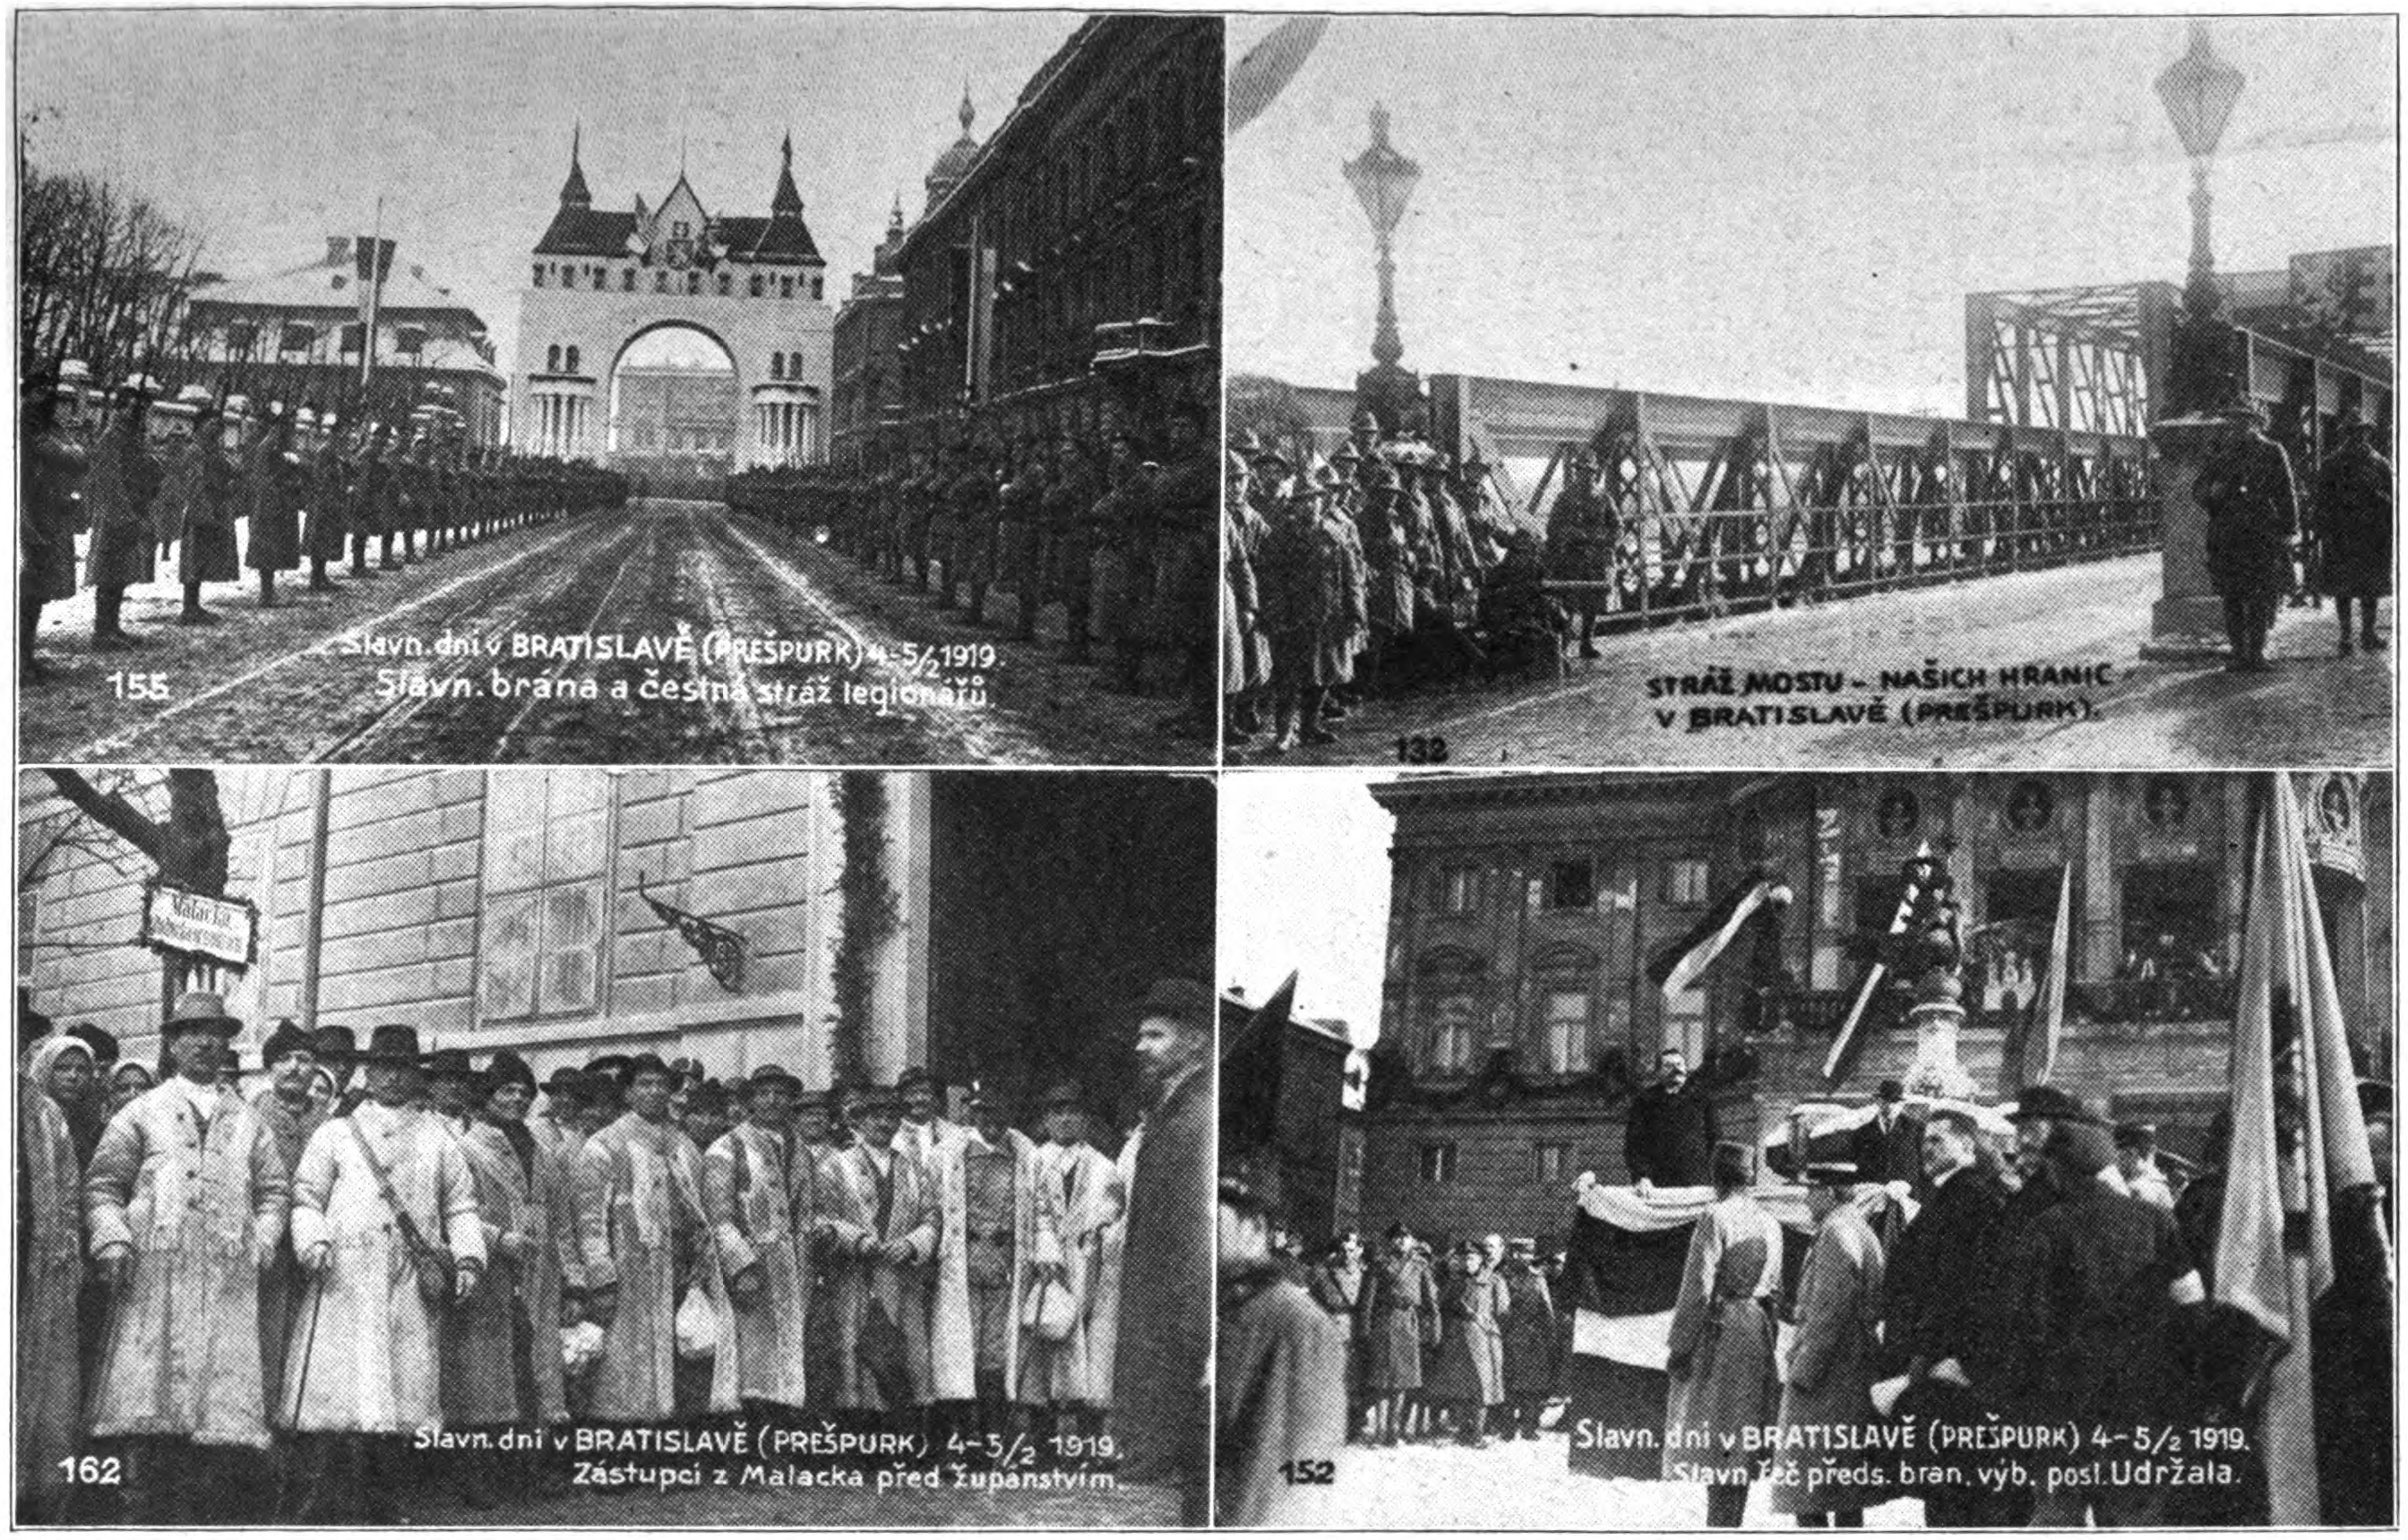 Celebrations in Bratislava, 1919